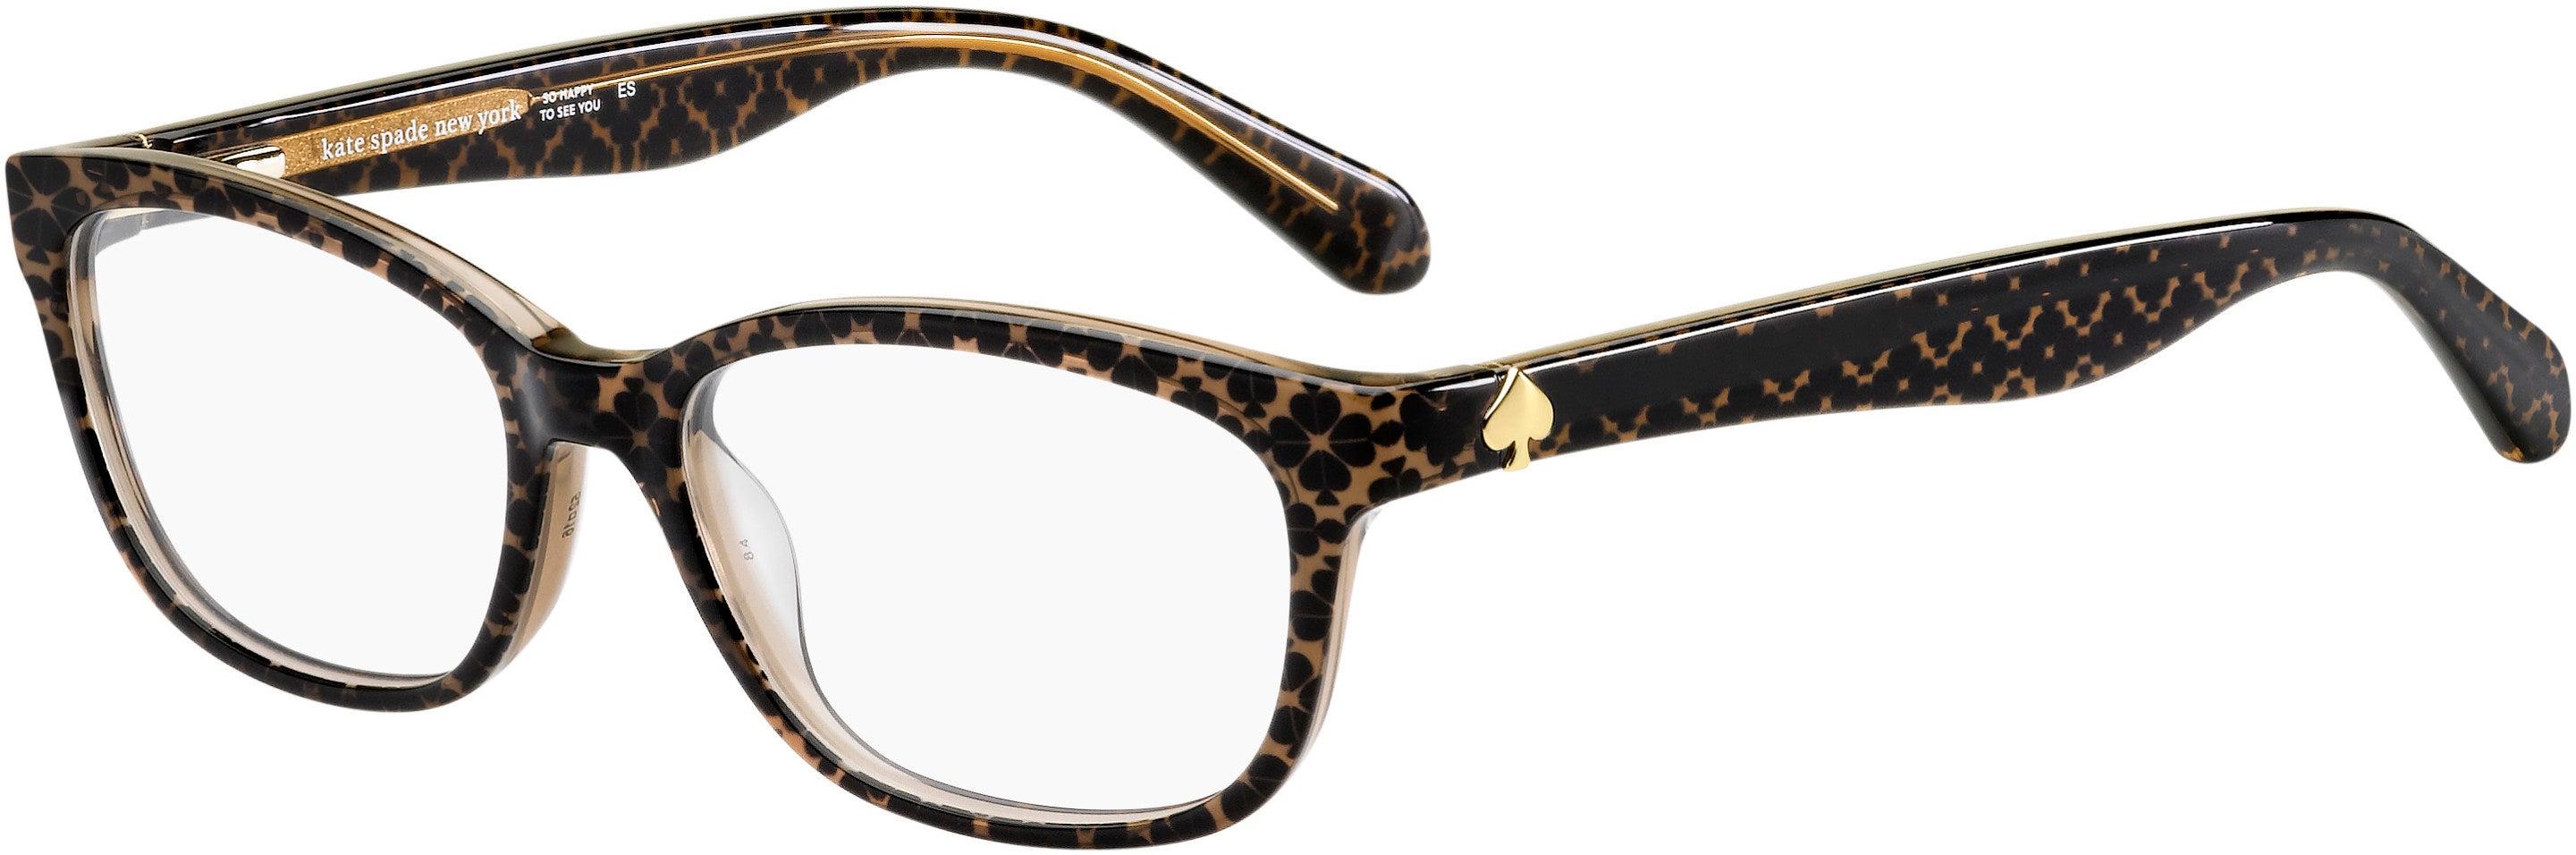 Kate Spade Brylie Rectangular Eyeglasses 0305-0305  Brown Hontwe (00 Demo Lens)